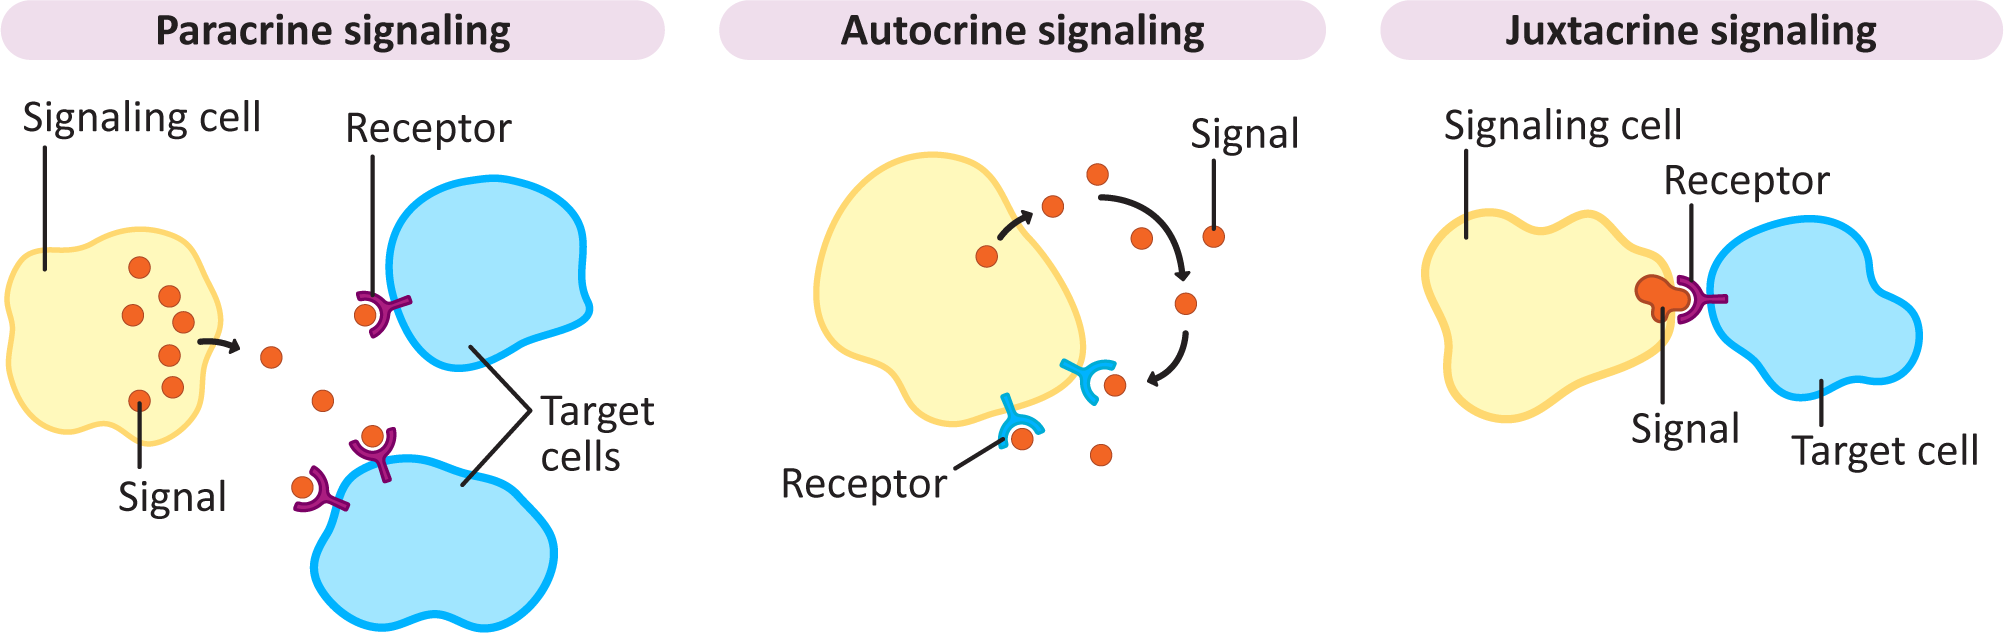 Paracrine, autocrine and juxtacrine signaling schematic